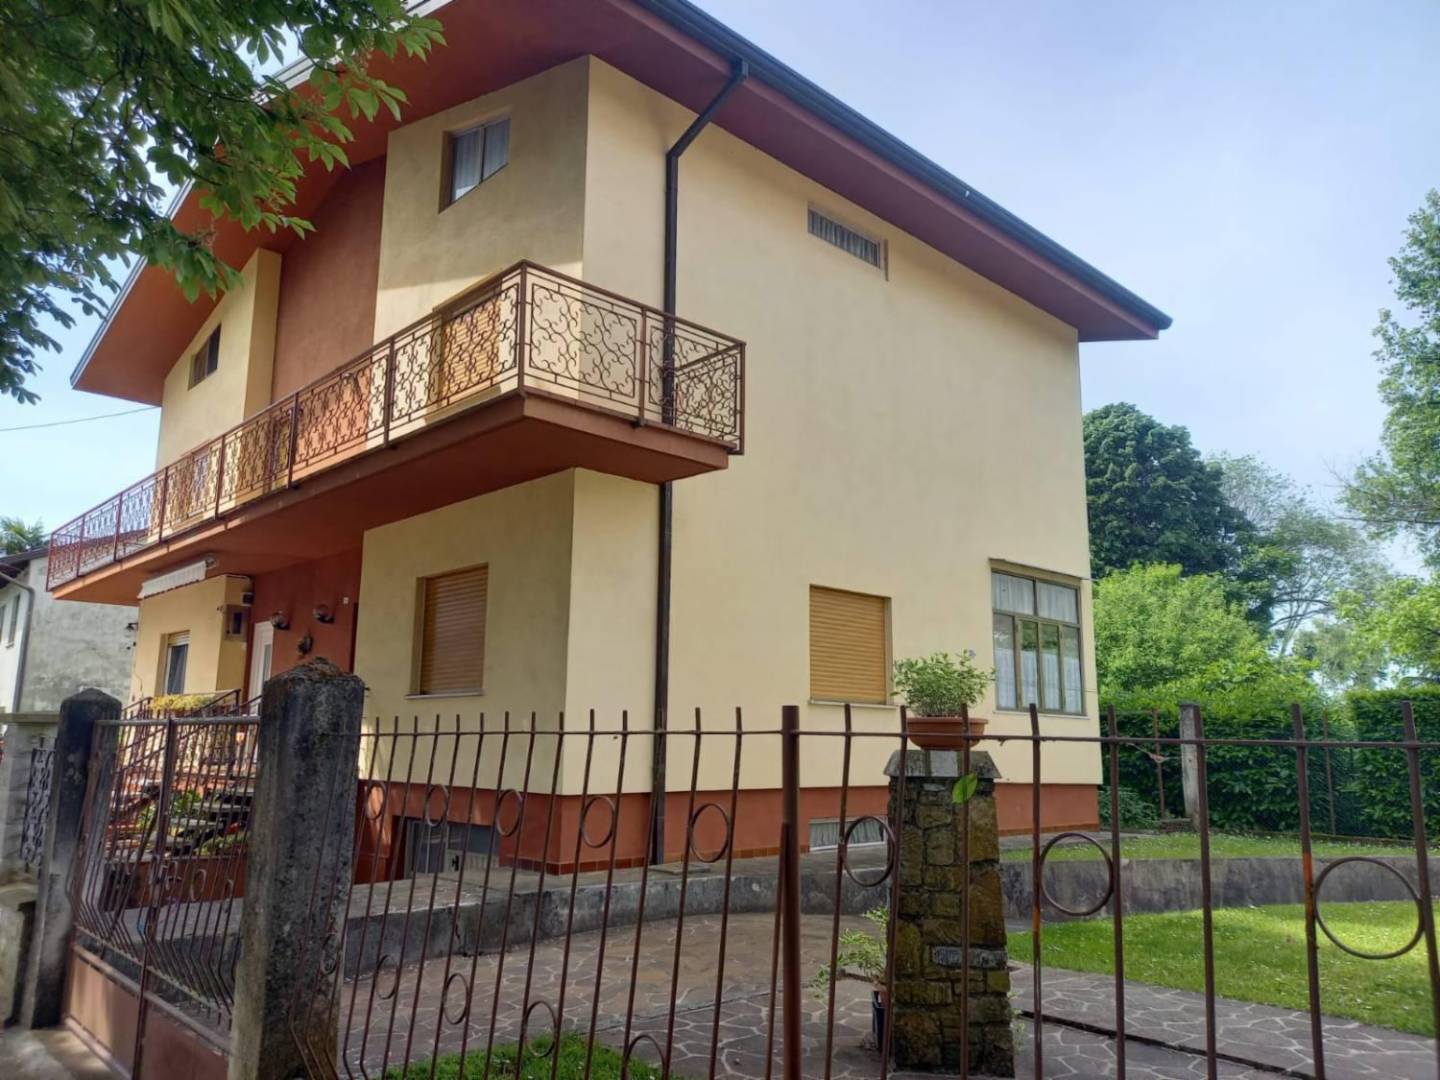 Casa Bi - Trifamiliare in Vendita a Mariano del Friuli